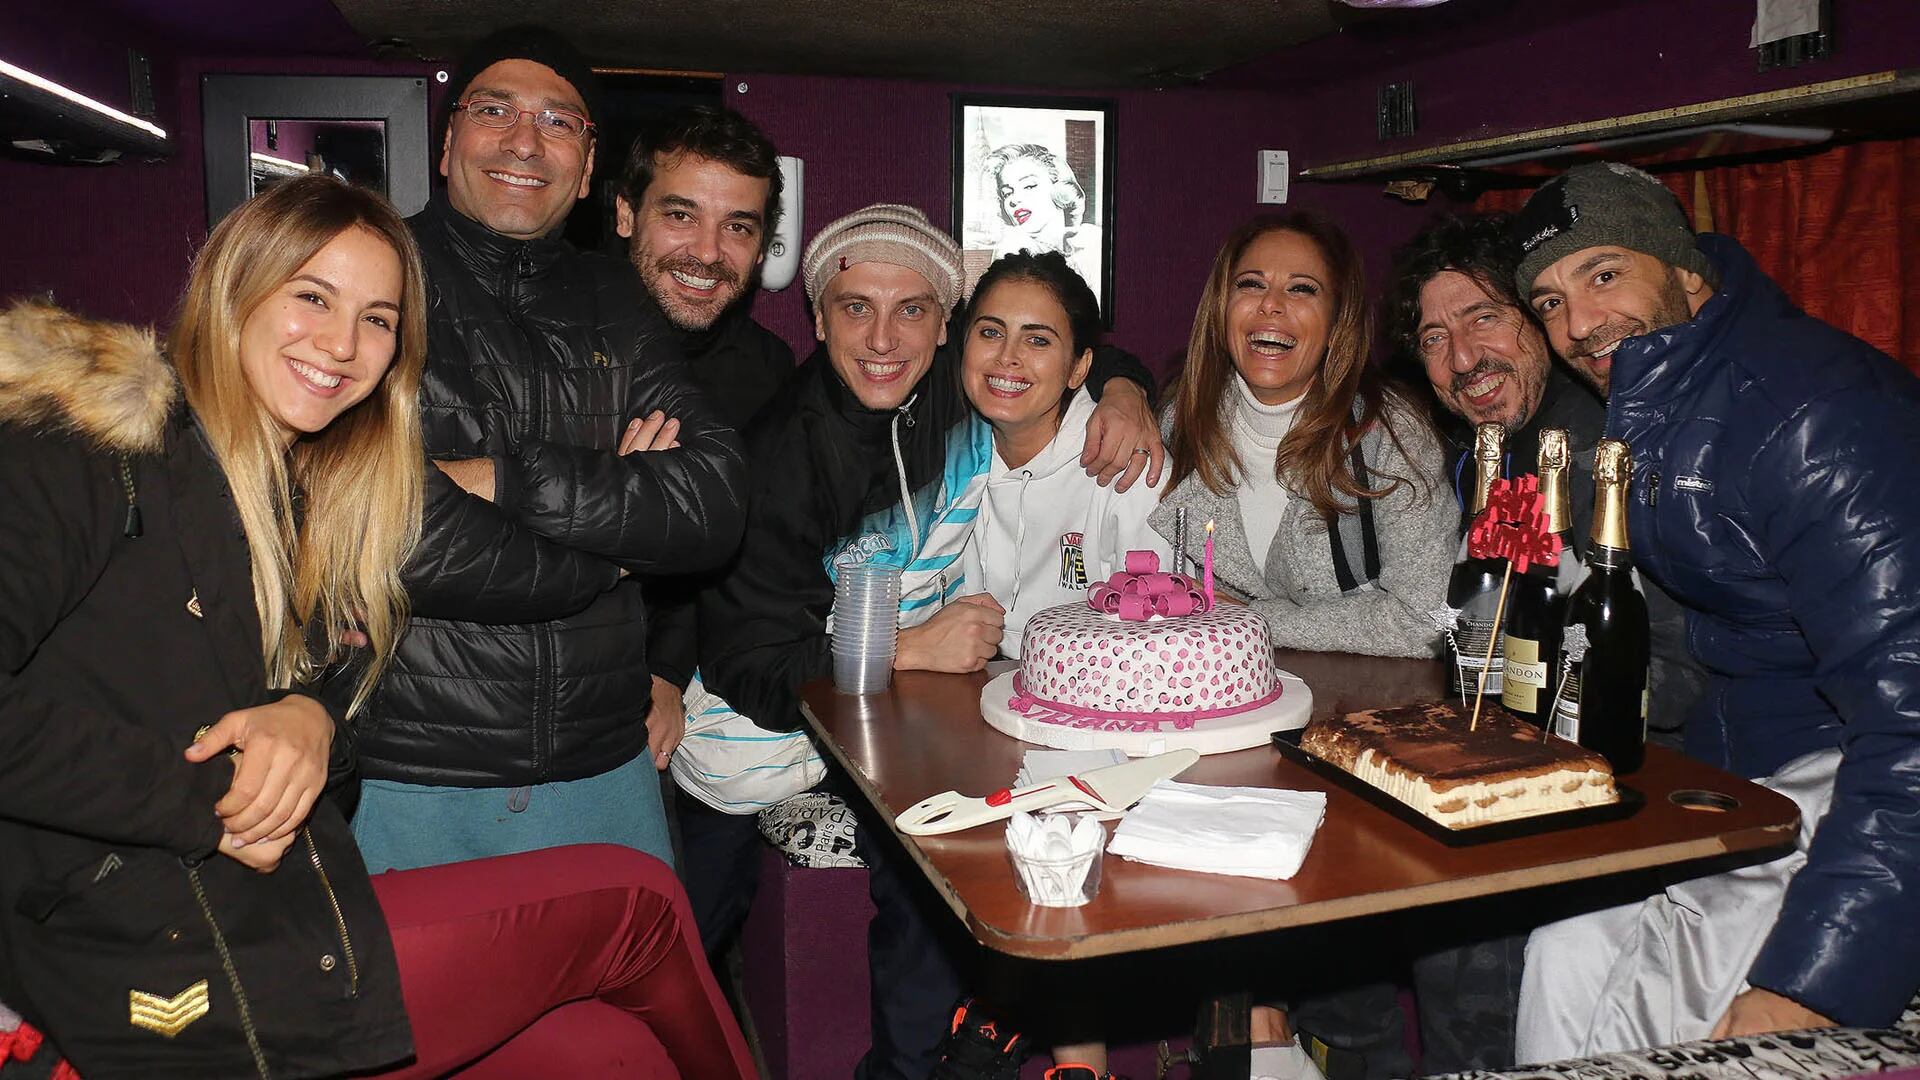 El elenco del espectáculo “Abracadabra” festejó el cumpleaños de Iliana Calabró